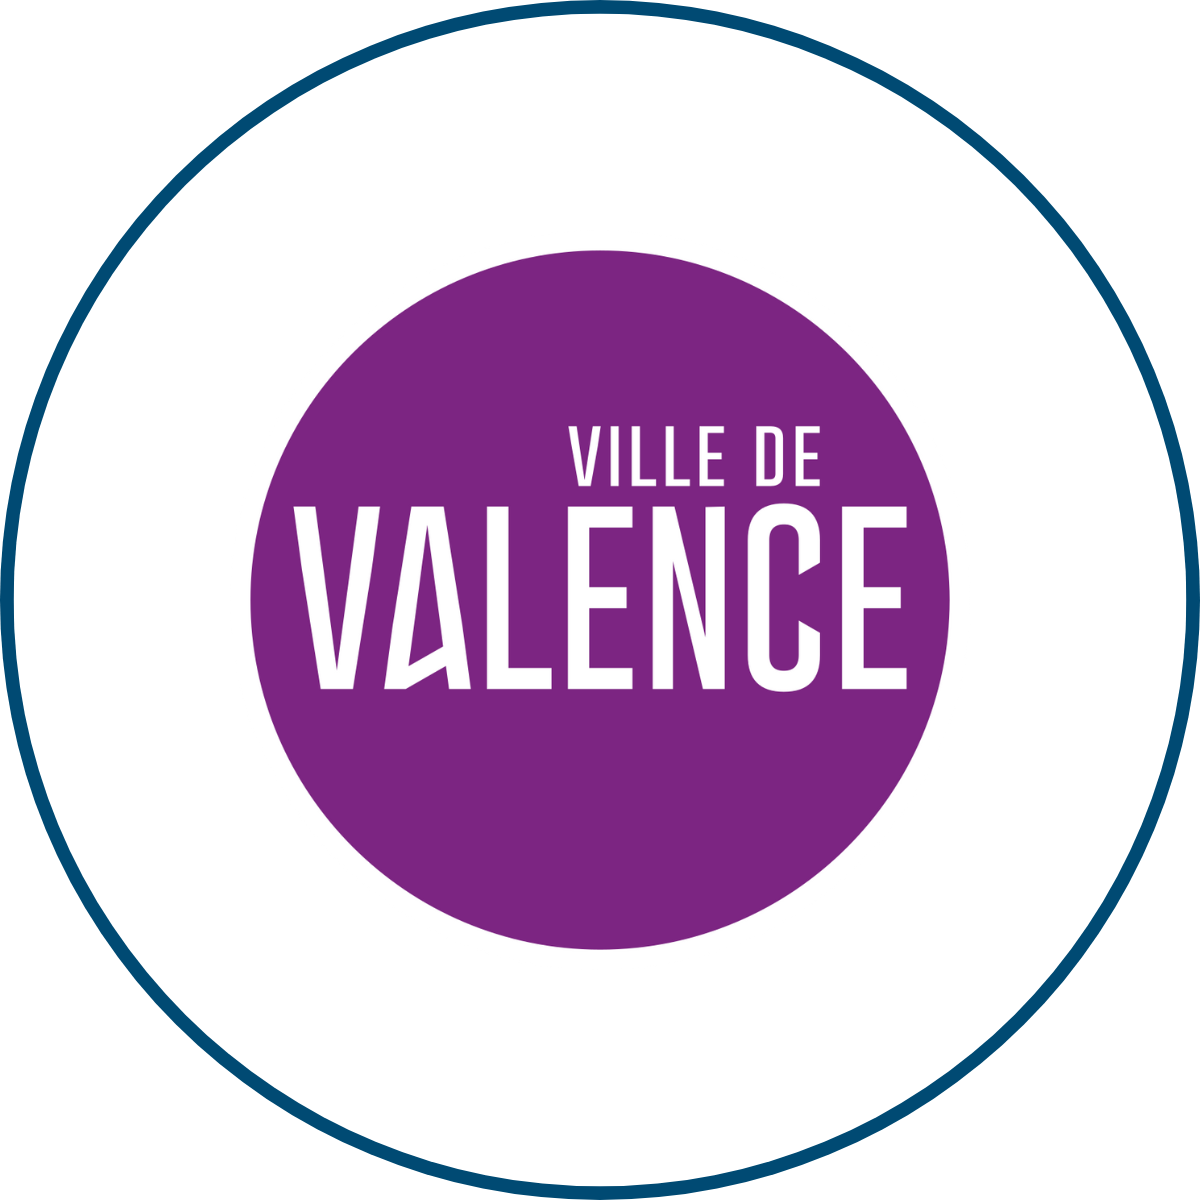 SEM IN Situ | Notre équipe | Ville de Valence | Partenaires | Espaces Économique & Commerciaux | Valence Romans Agglo | Drôme